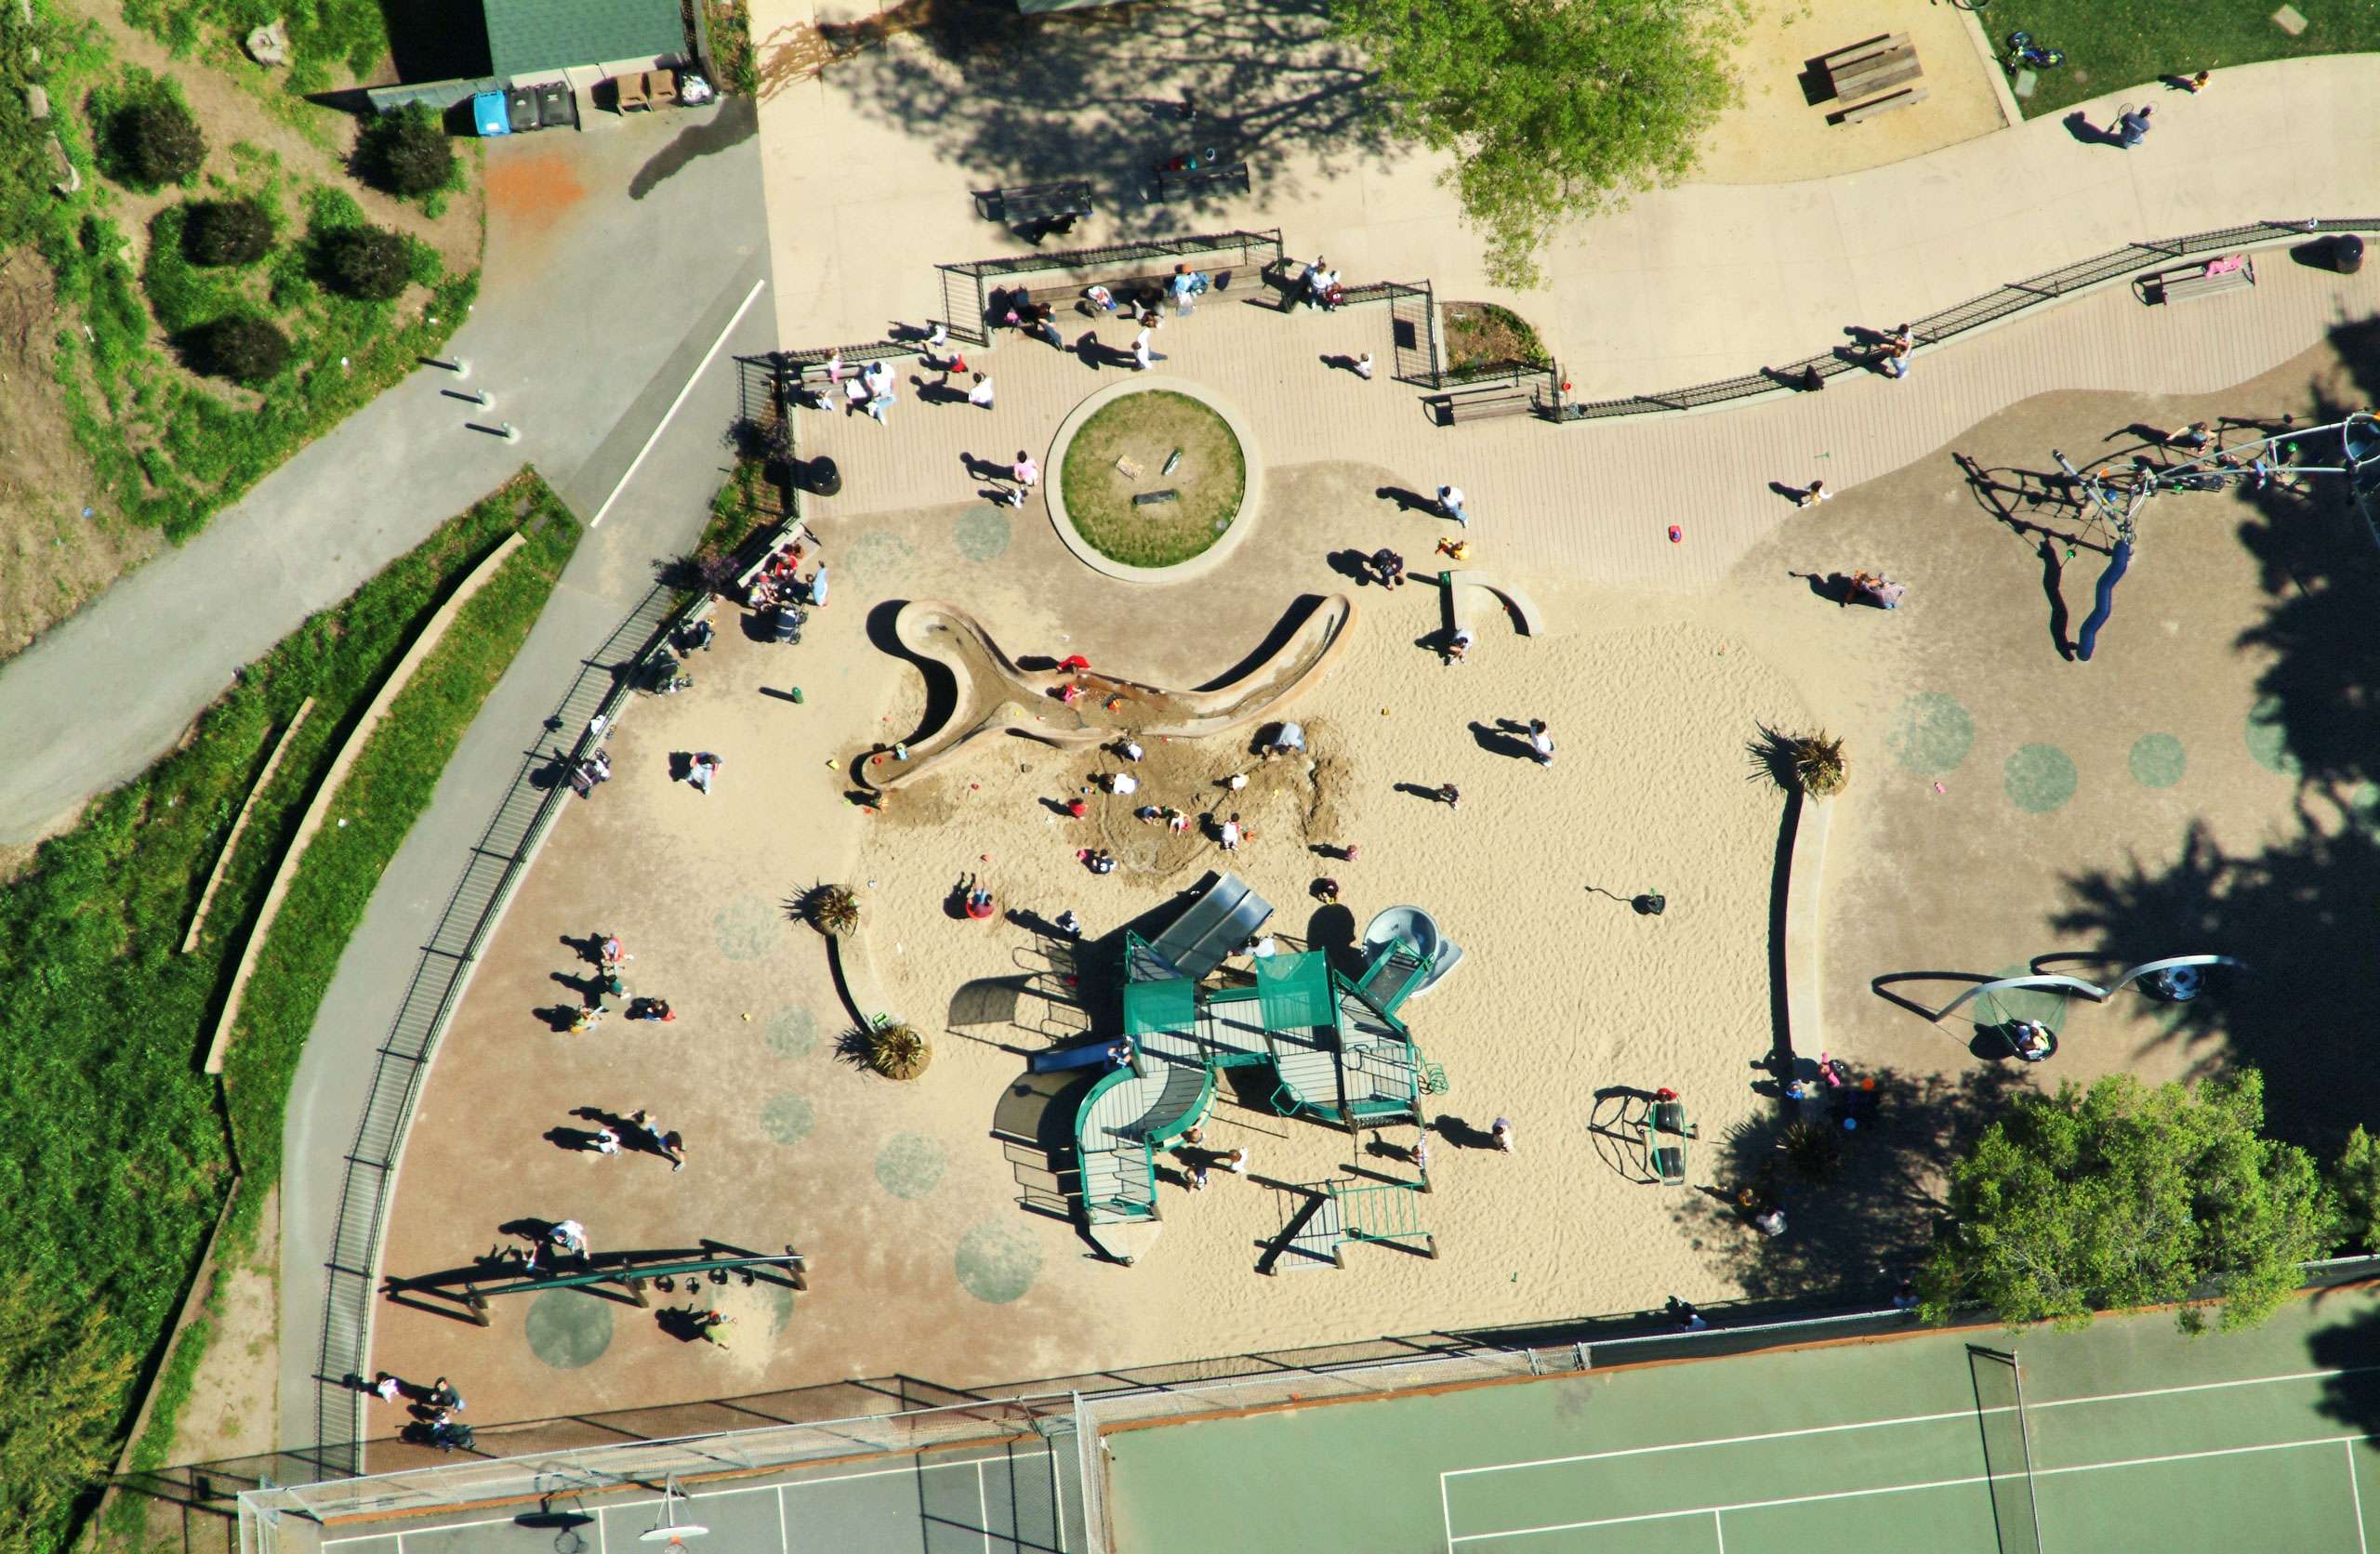 Presidio Wall Playground